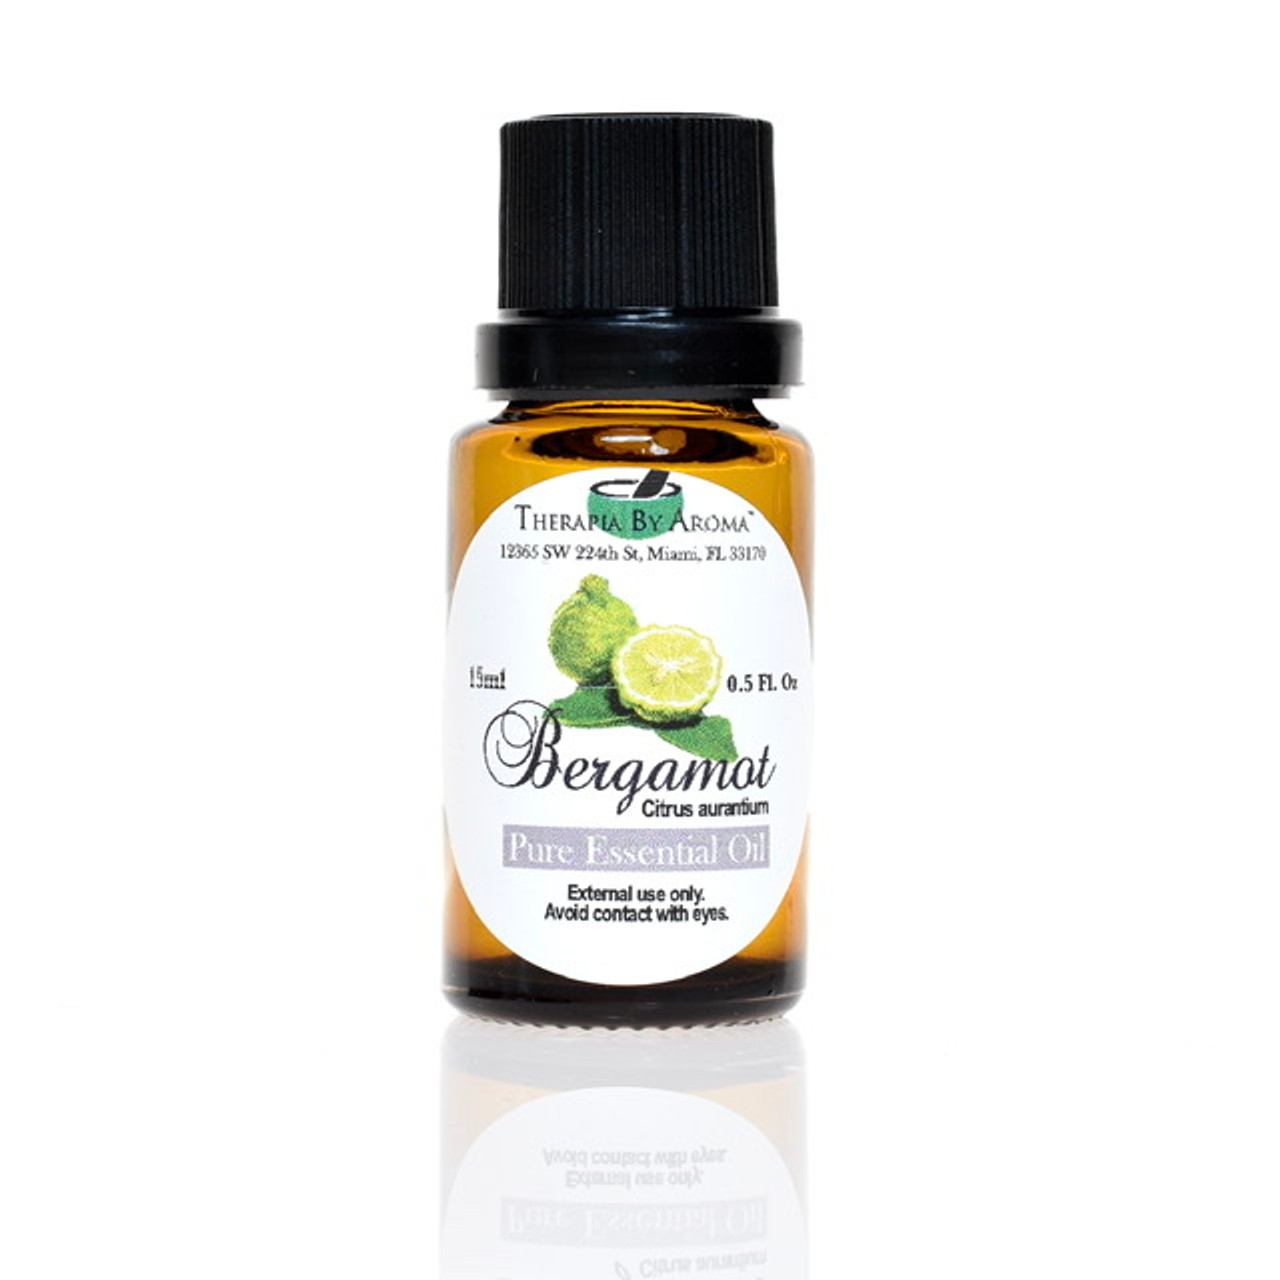 Bergamot Essential Oil (Pure) 15ml - Therapia By Aroma